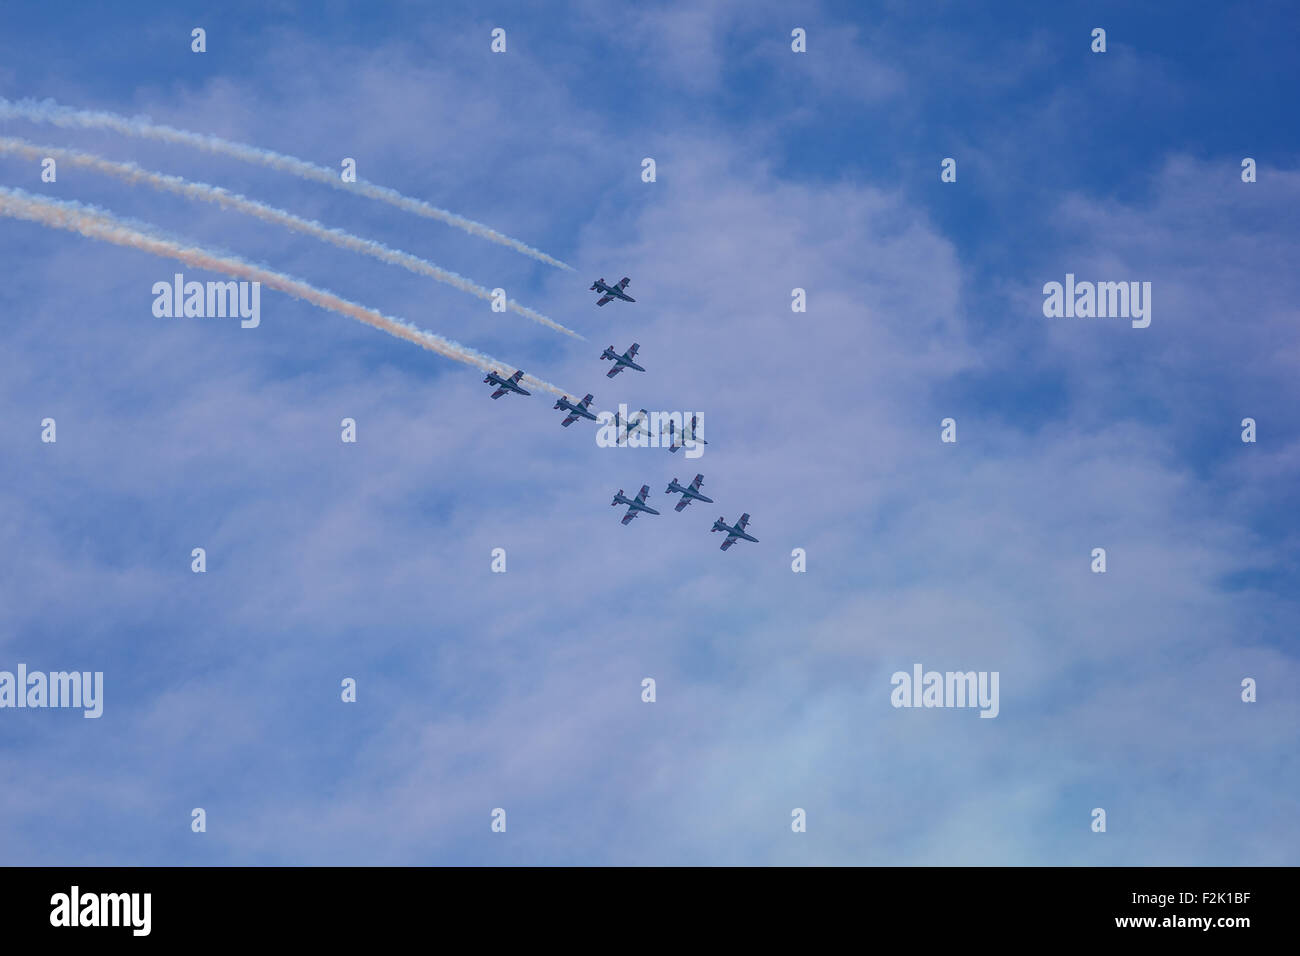 Triest, Italien - 01. Juni: Anzeigen der italienischen Militärflugzeug Frecce Tricolore "Trikolore Pfeile" in Akrobatik am 01. Juni genannt, Stockfoto